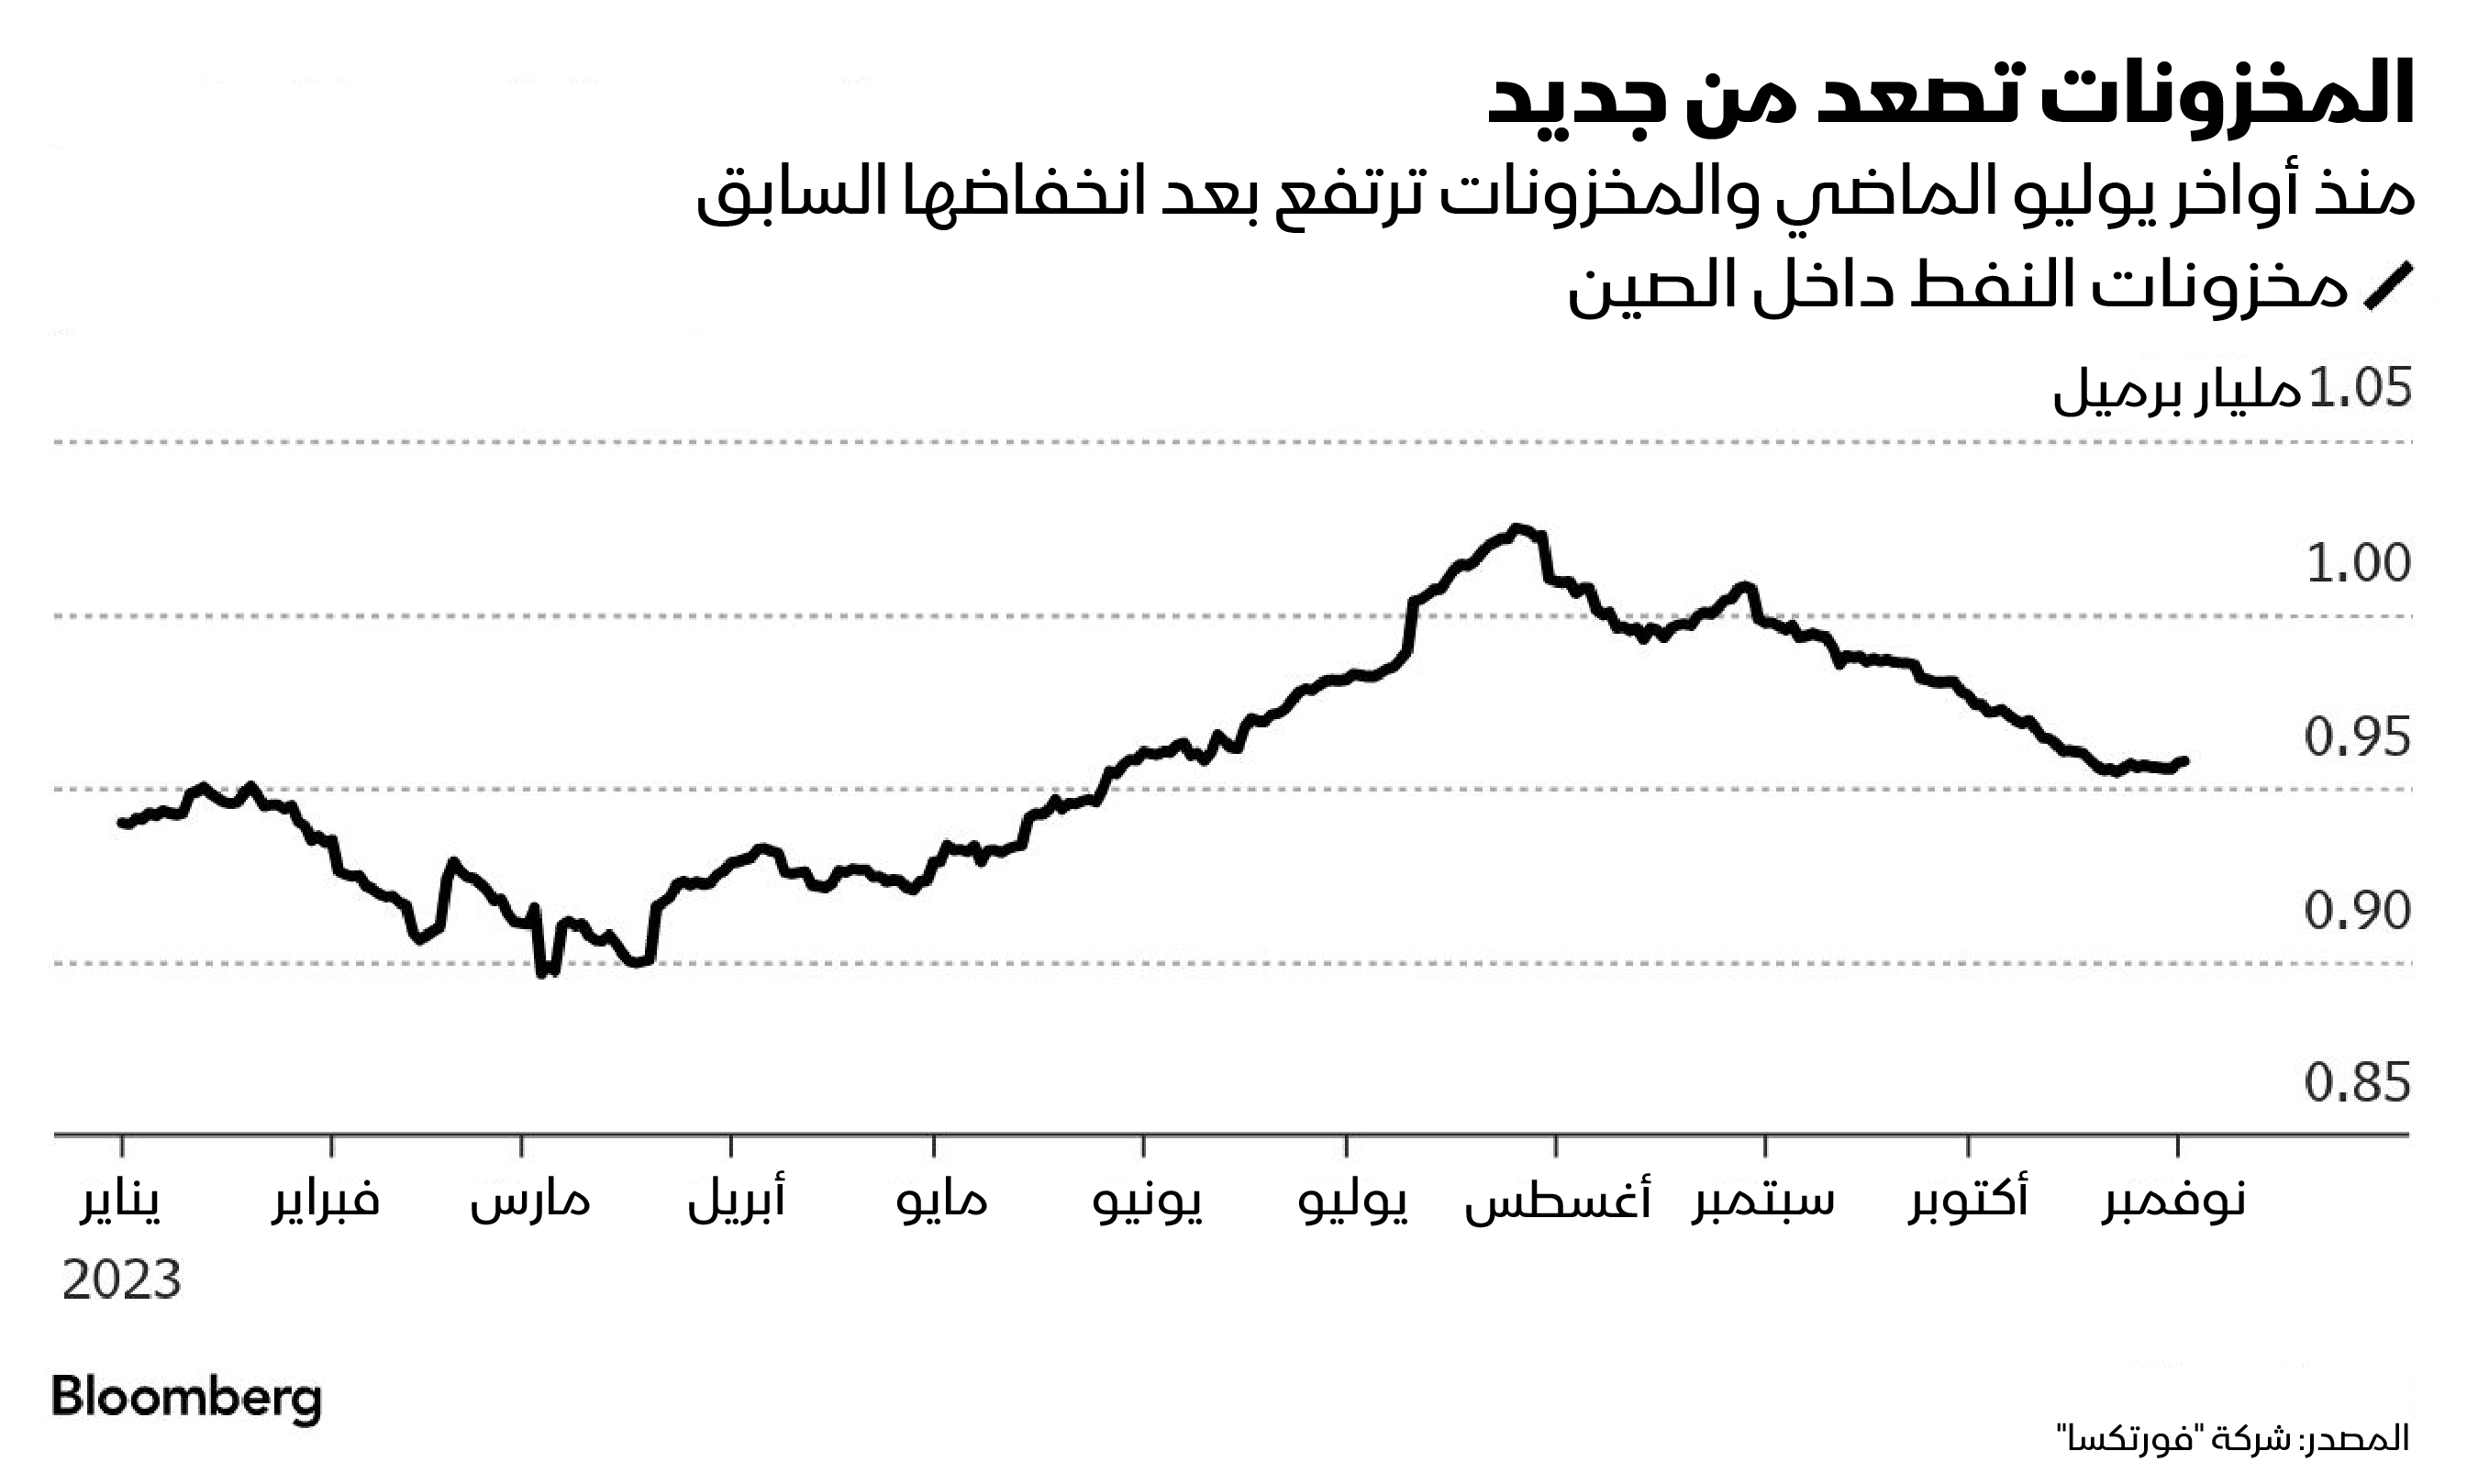 مخزونات النفط في الصين ترتفع منذ أواخر يوليو